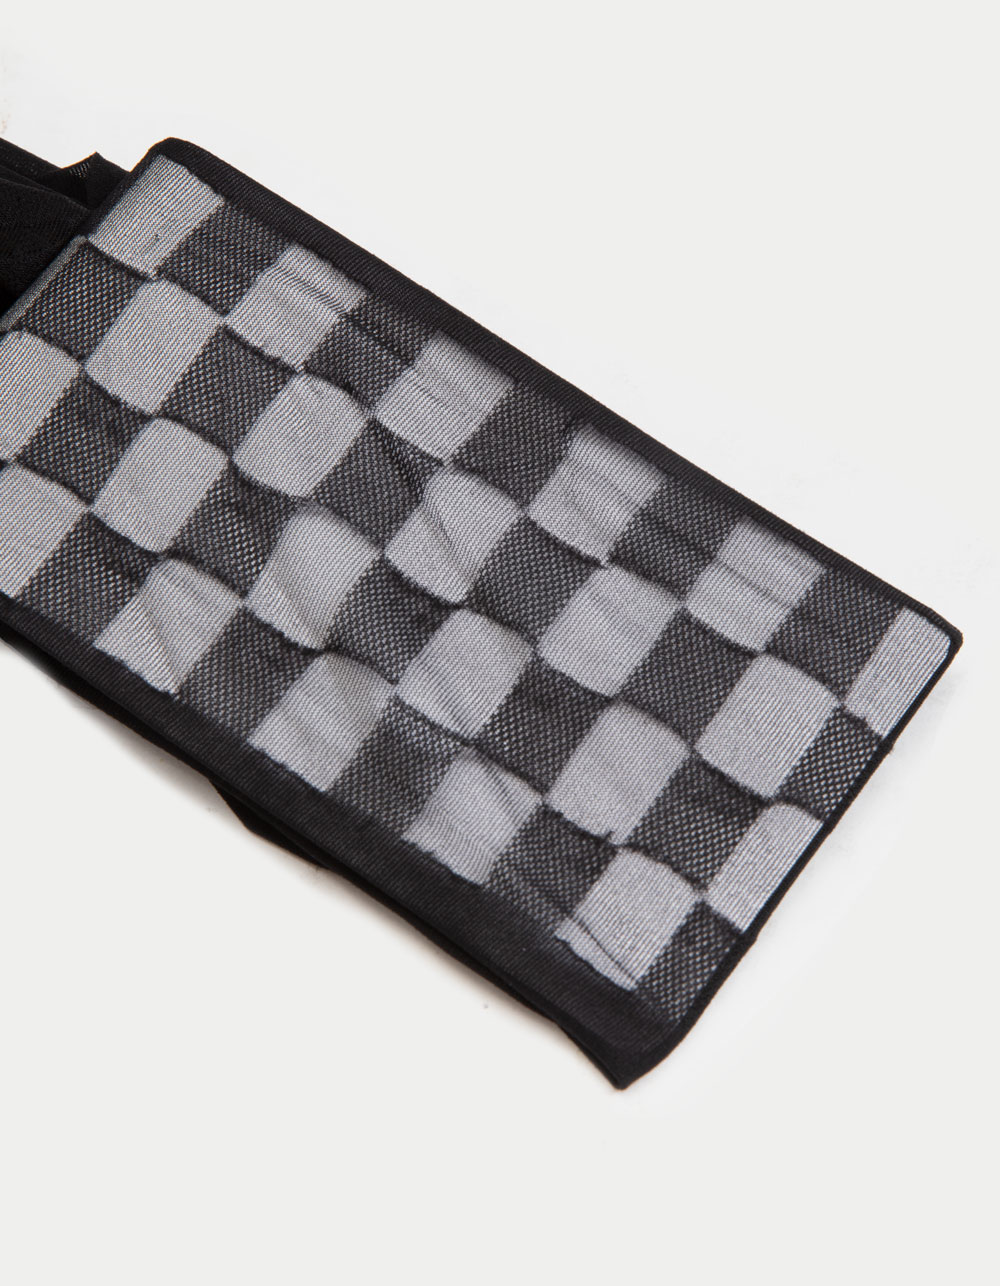 Full Tilt Checkered Sheer Tights - Black - One Size